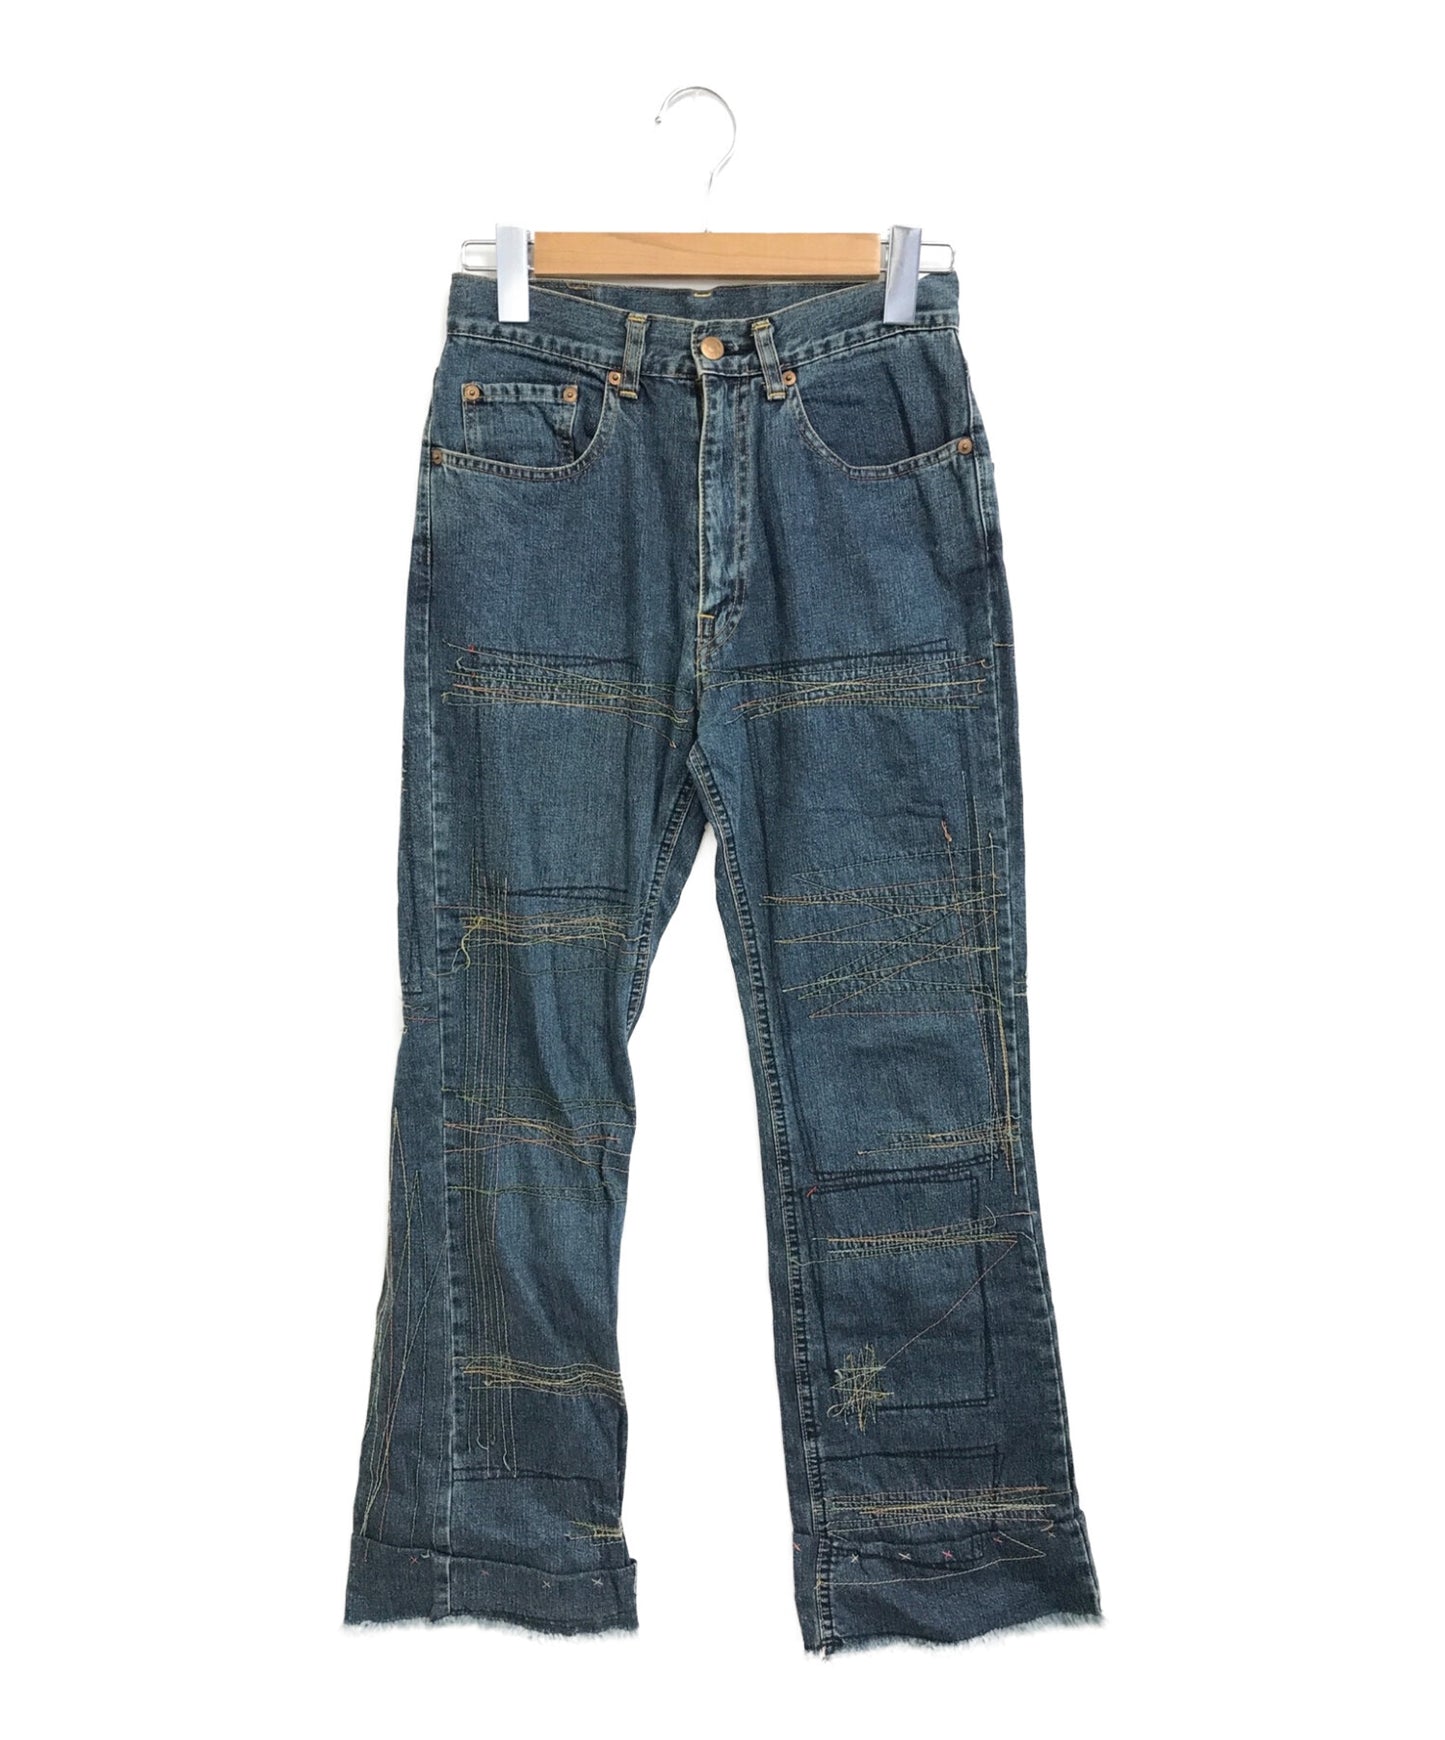 歇斯底里的魅力[舊]重建維修設計牛仔褲